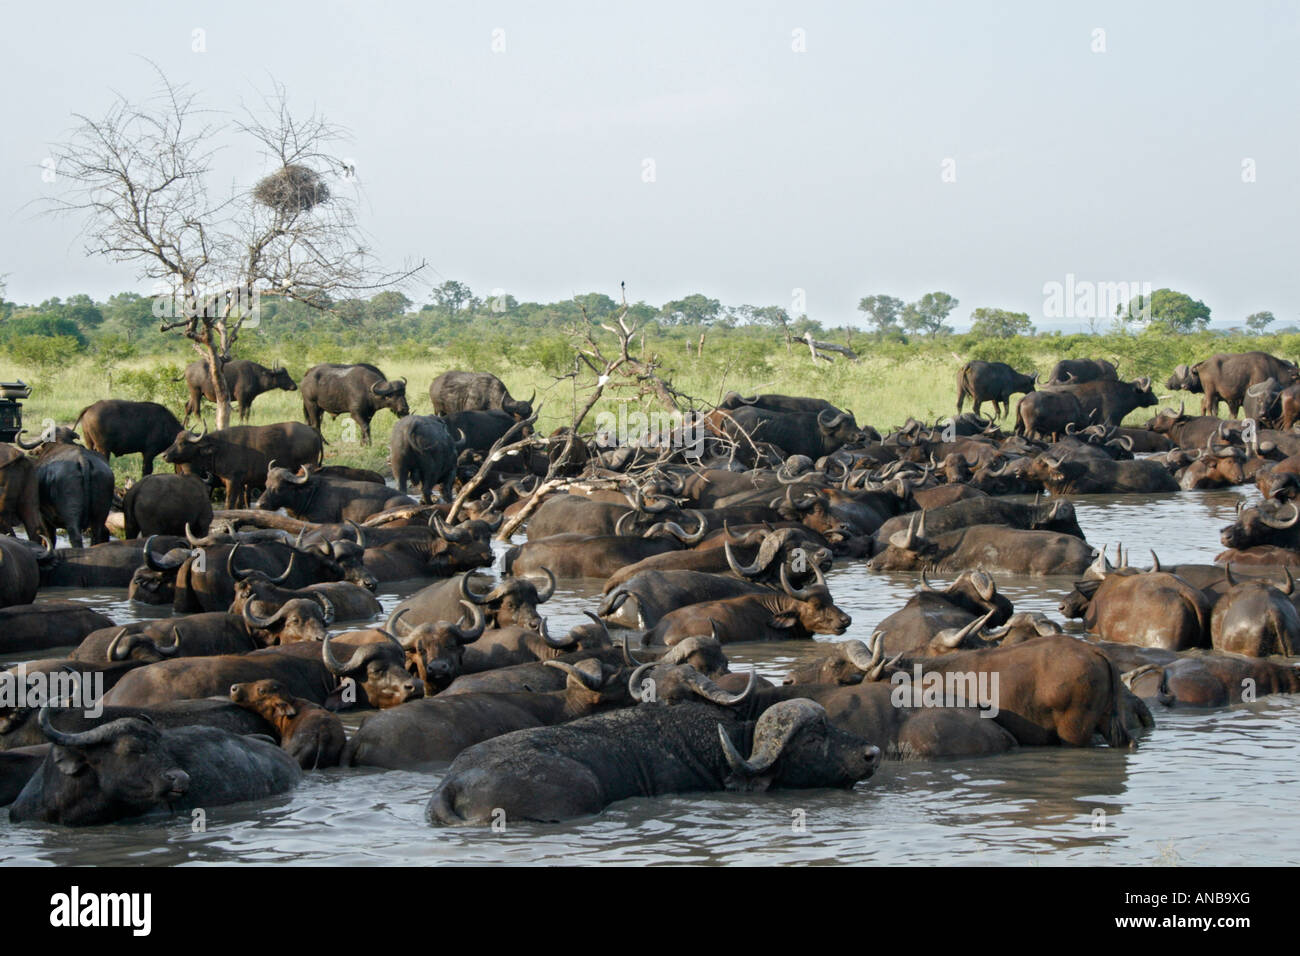 Gran manada de búfalos africanos de revolcarse en waterhole Foto de stock